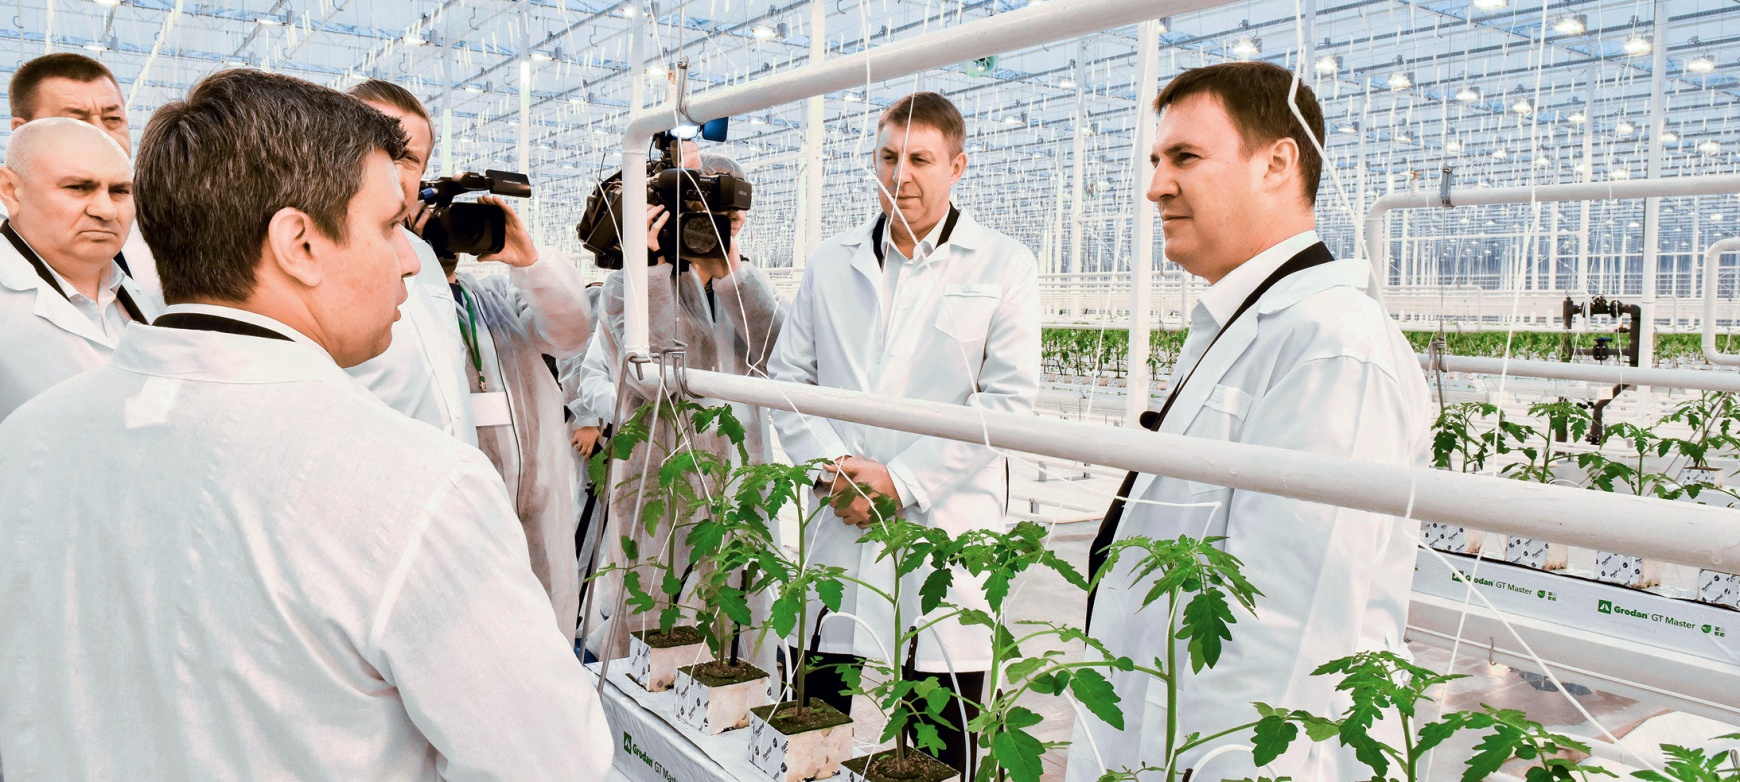  Дмитрий Патрушев: «Рассчитываем на достойный урожай, чтобы обеспечить внутренний рынок и реализовать внешнеторговый потенциал»